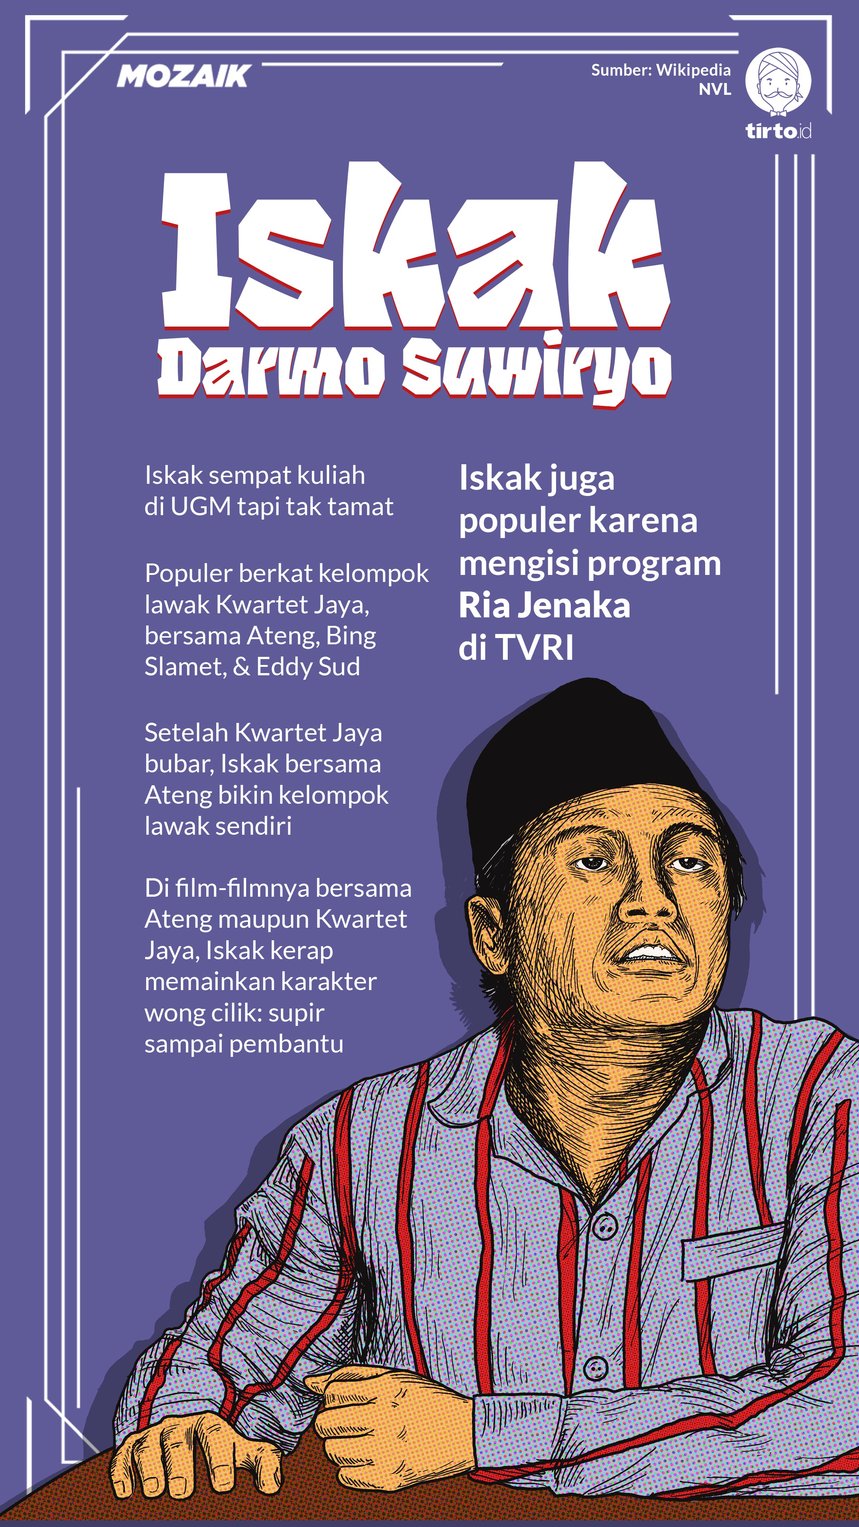 Infografik Mozaik Iskak Darmo Suwiryo